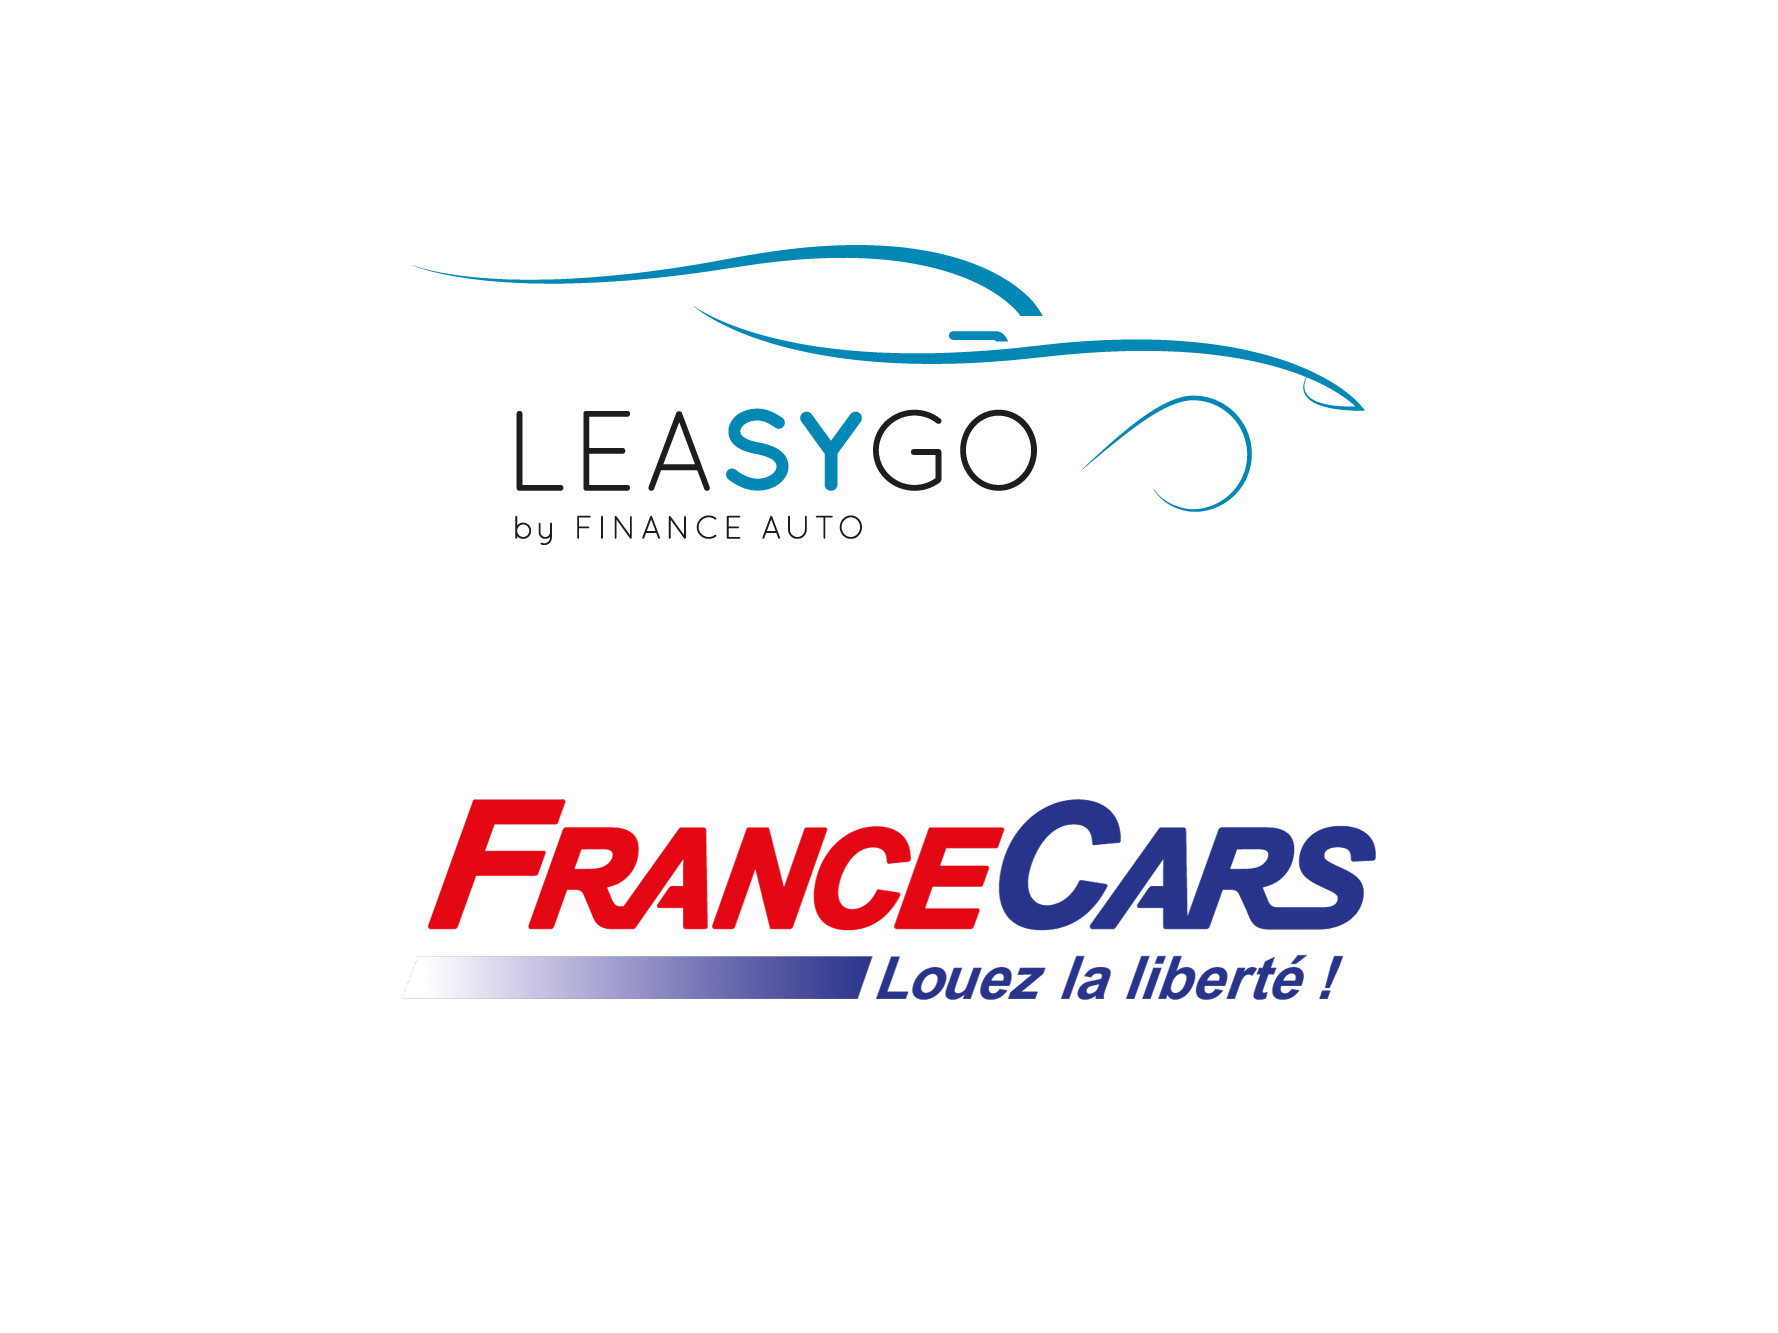 LEASYGO France Cars